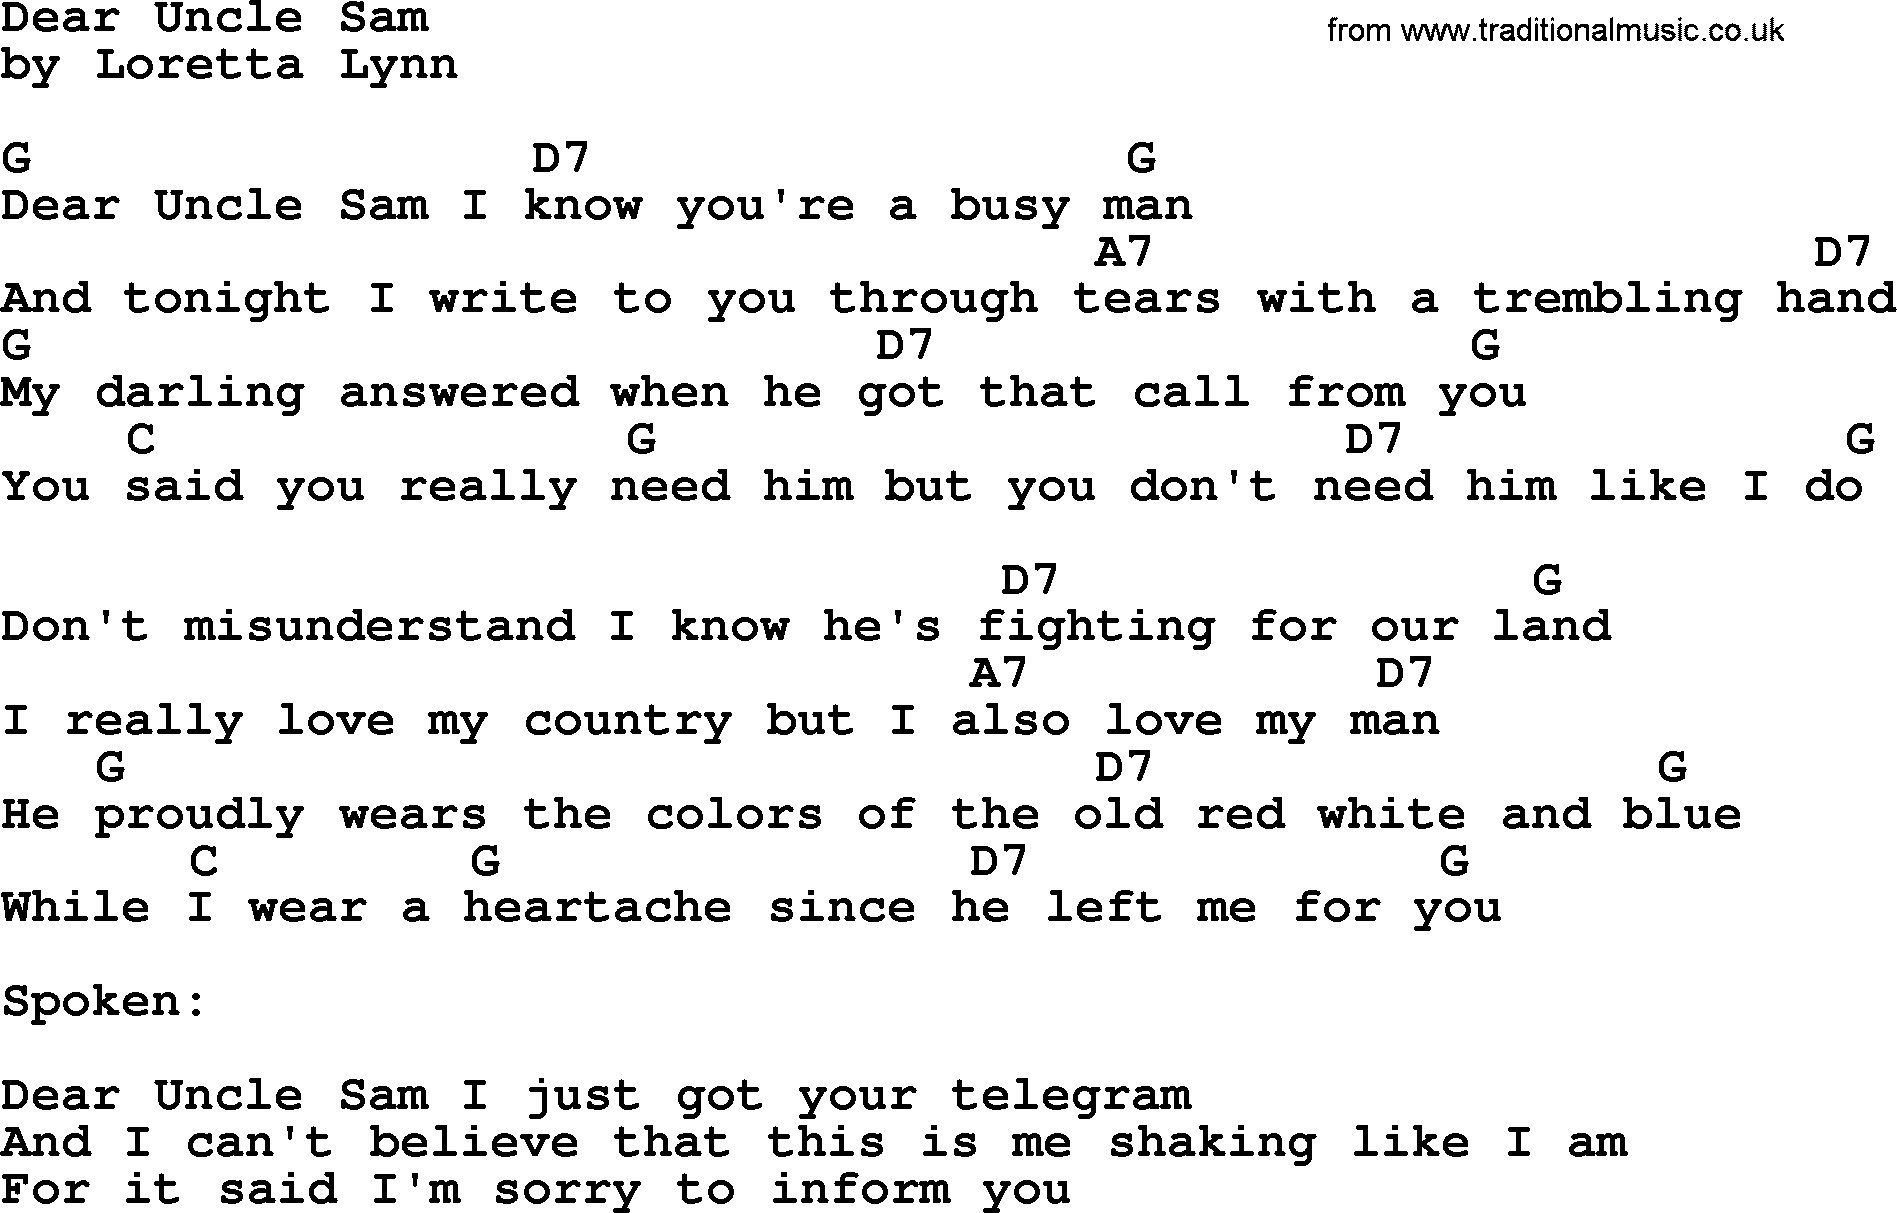 Loretta Lynn song: Dear Uncle Sam lyrics and chords